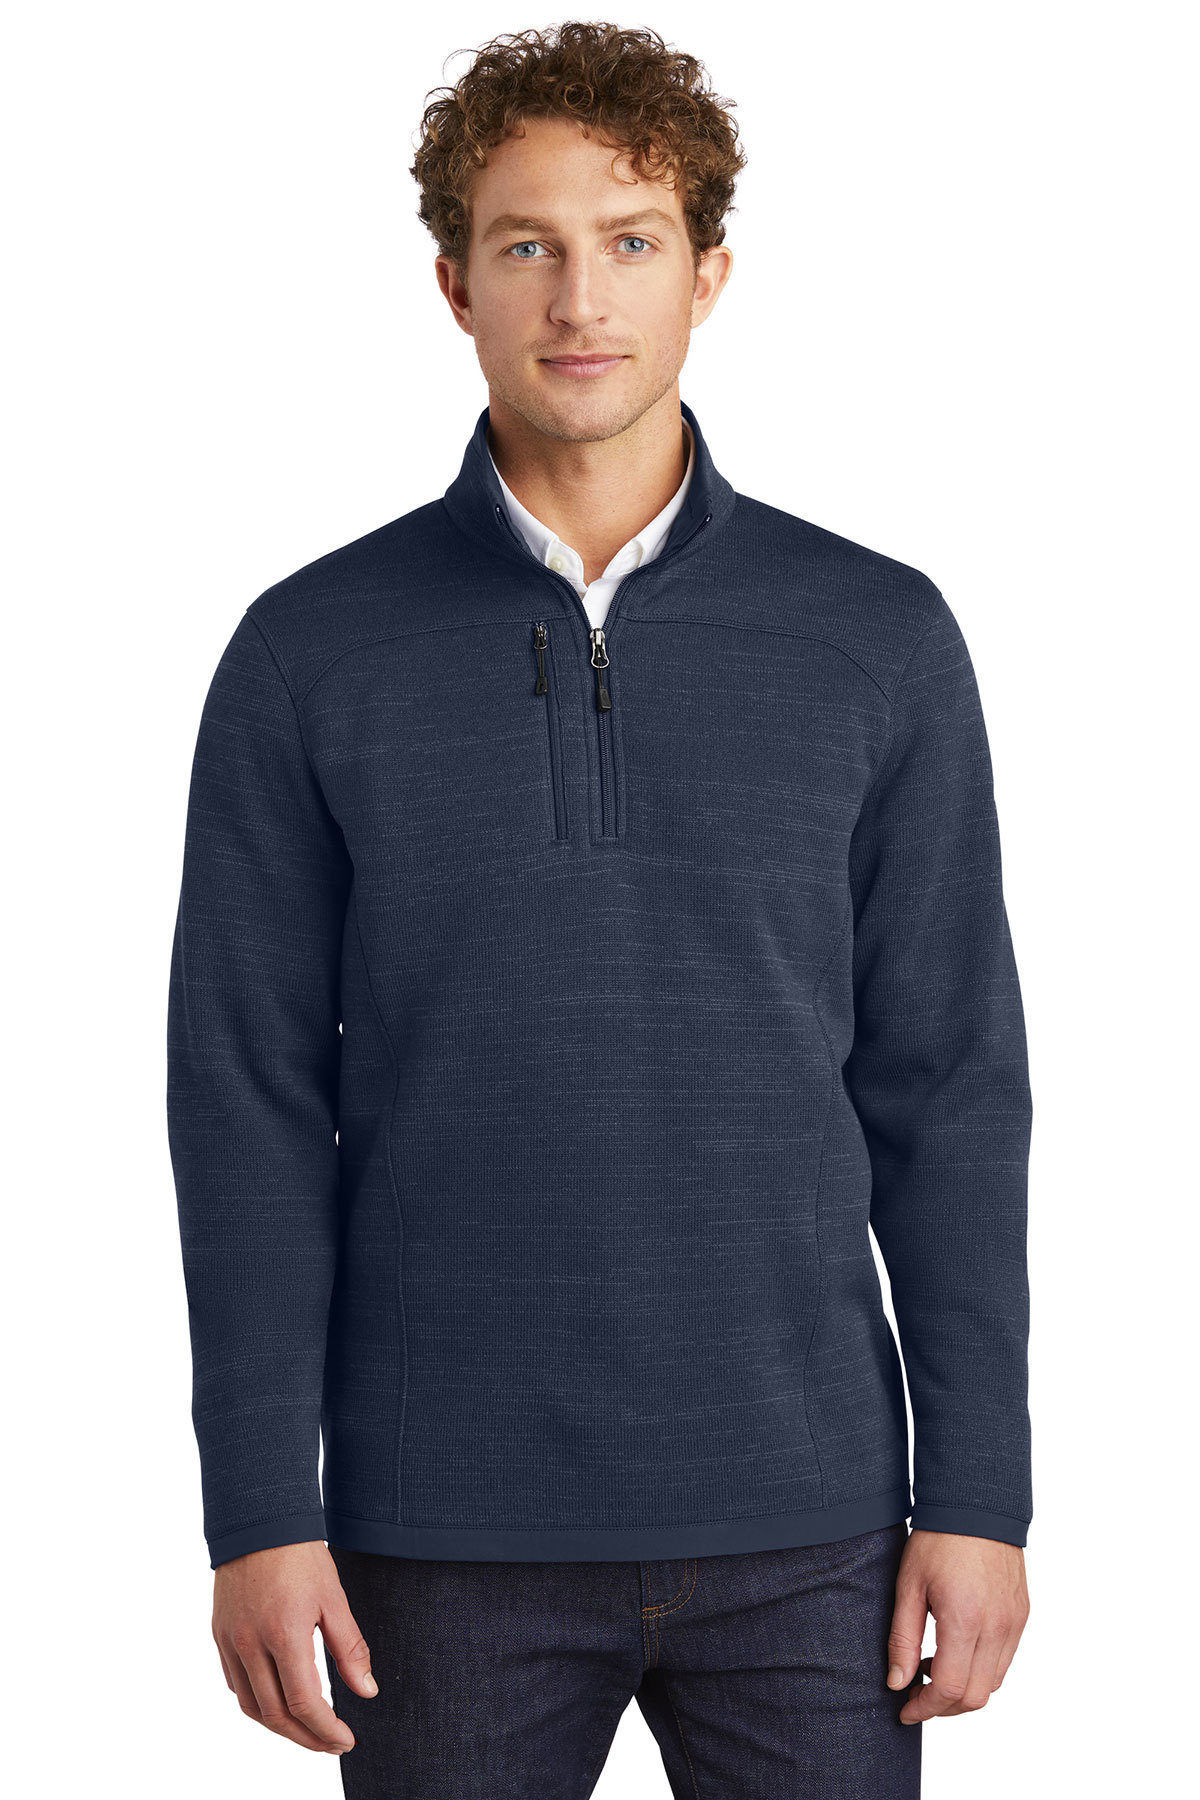 Eddie Bauer Sweater Fleece 1/4-Zip | Product | Company Casuals